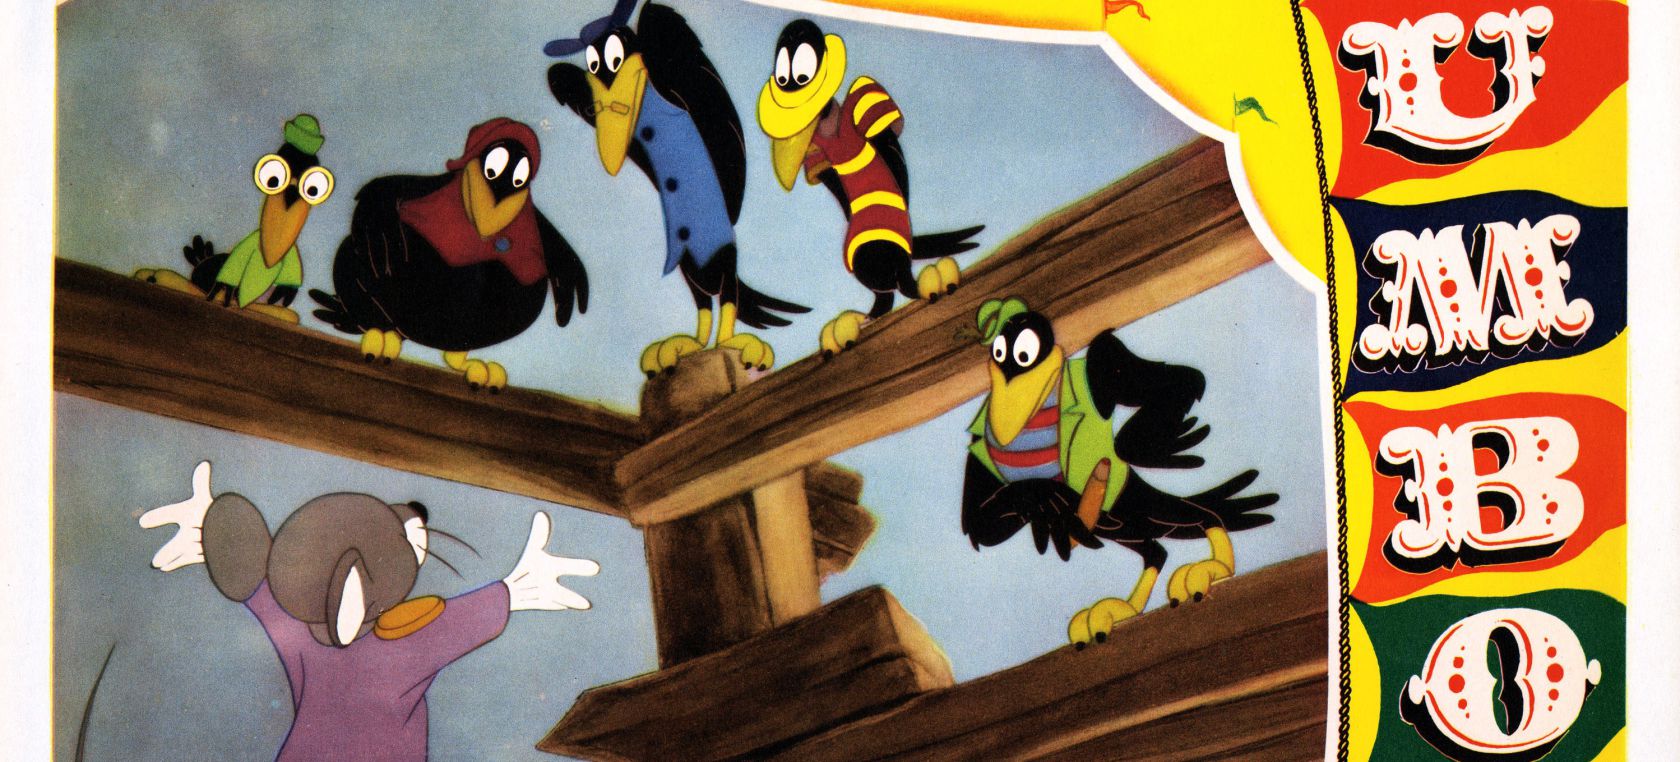 Disney censura 'Dumbo', 'Los Aristogatos' y 'Peter Pan' por difundir  mensajes racistas | Cine y Televisión | LOS40